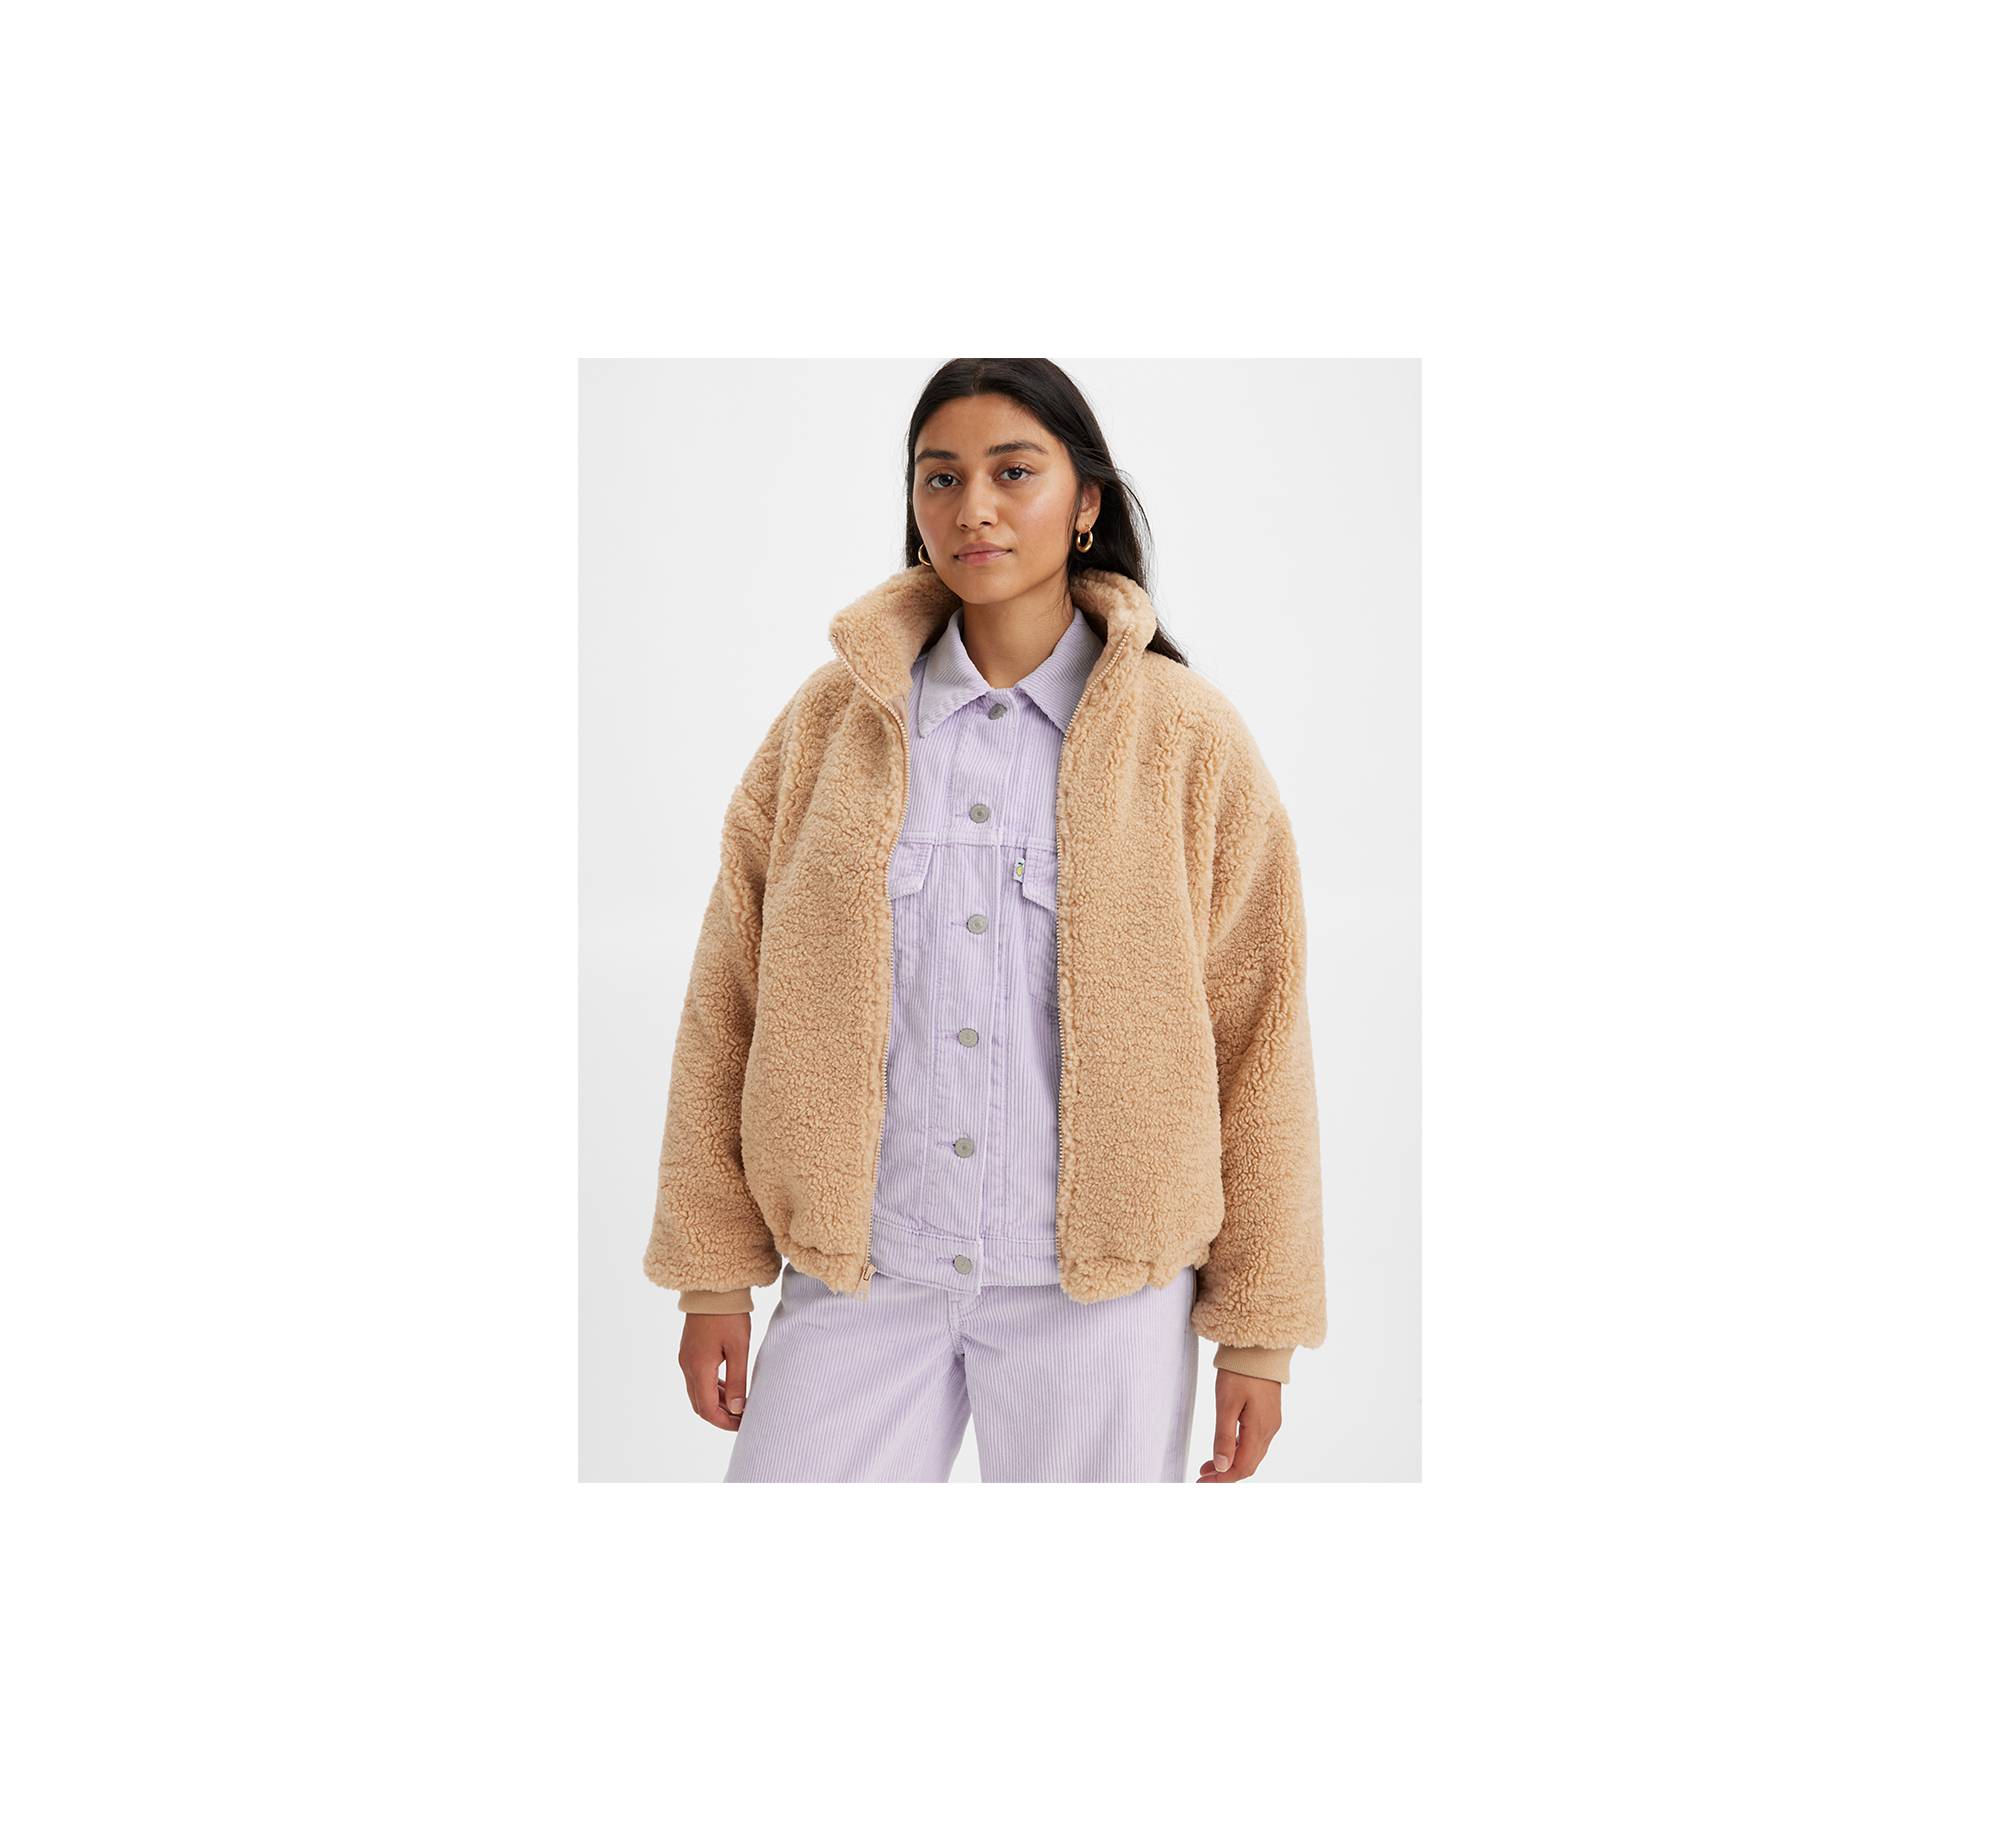 Sherpa Fleece Jacket 1